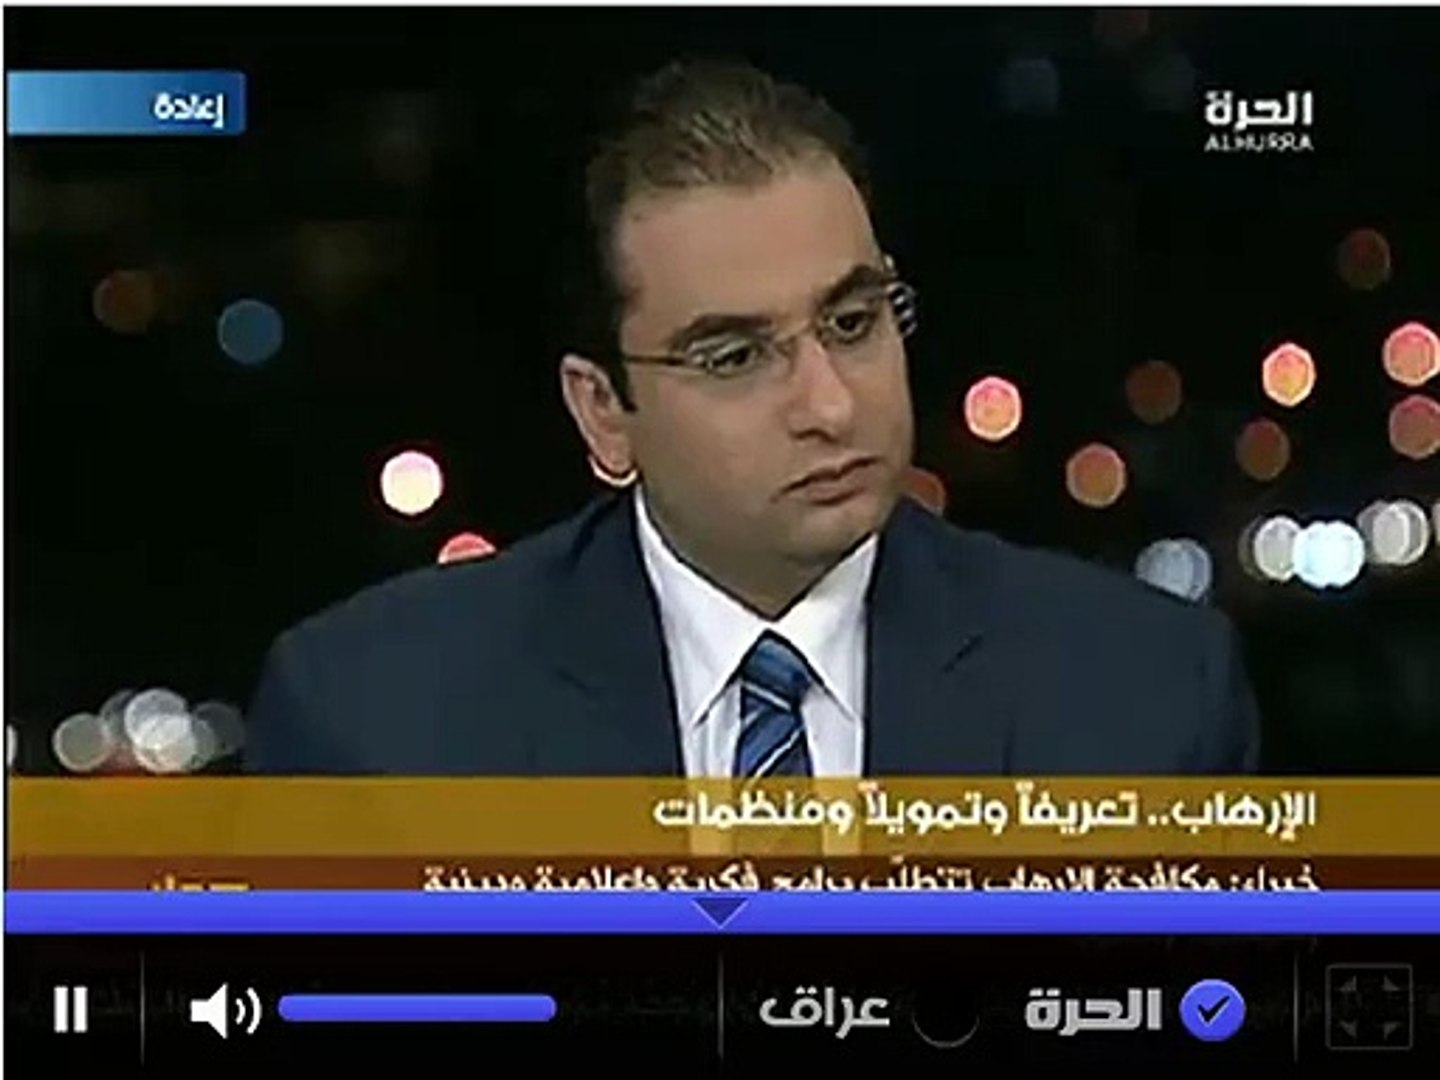 الحرة مباشر Al-Hurra TV قناة الحرة البث المباشر - فيديو Dailymotion